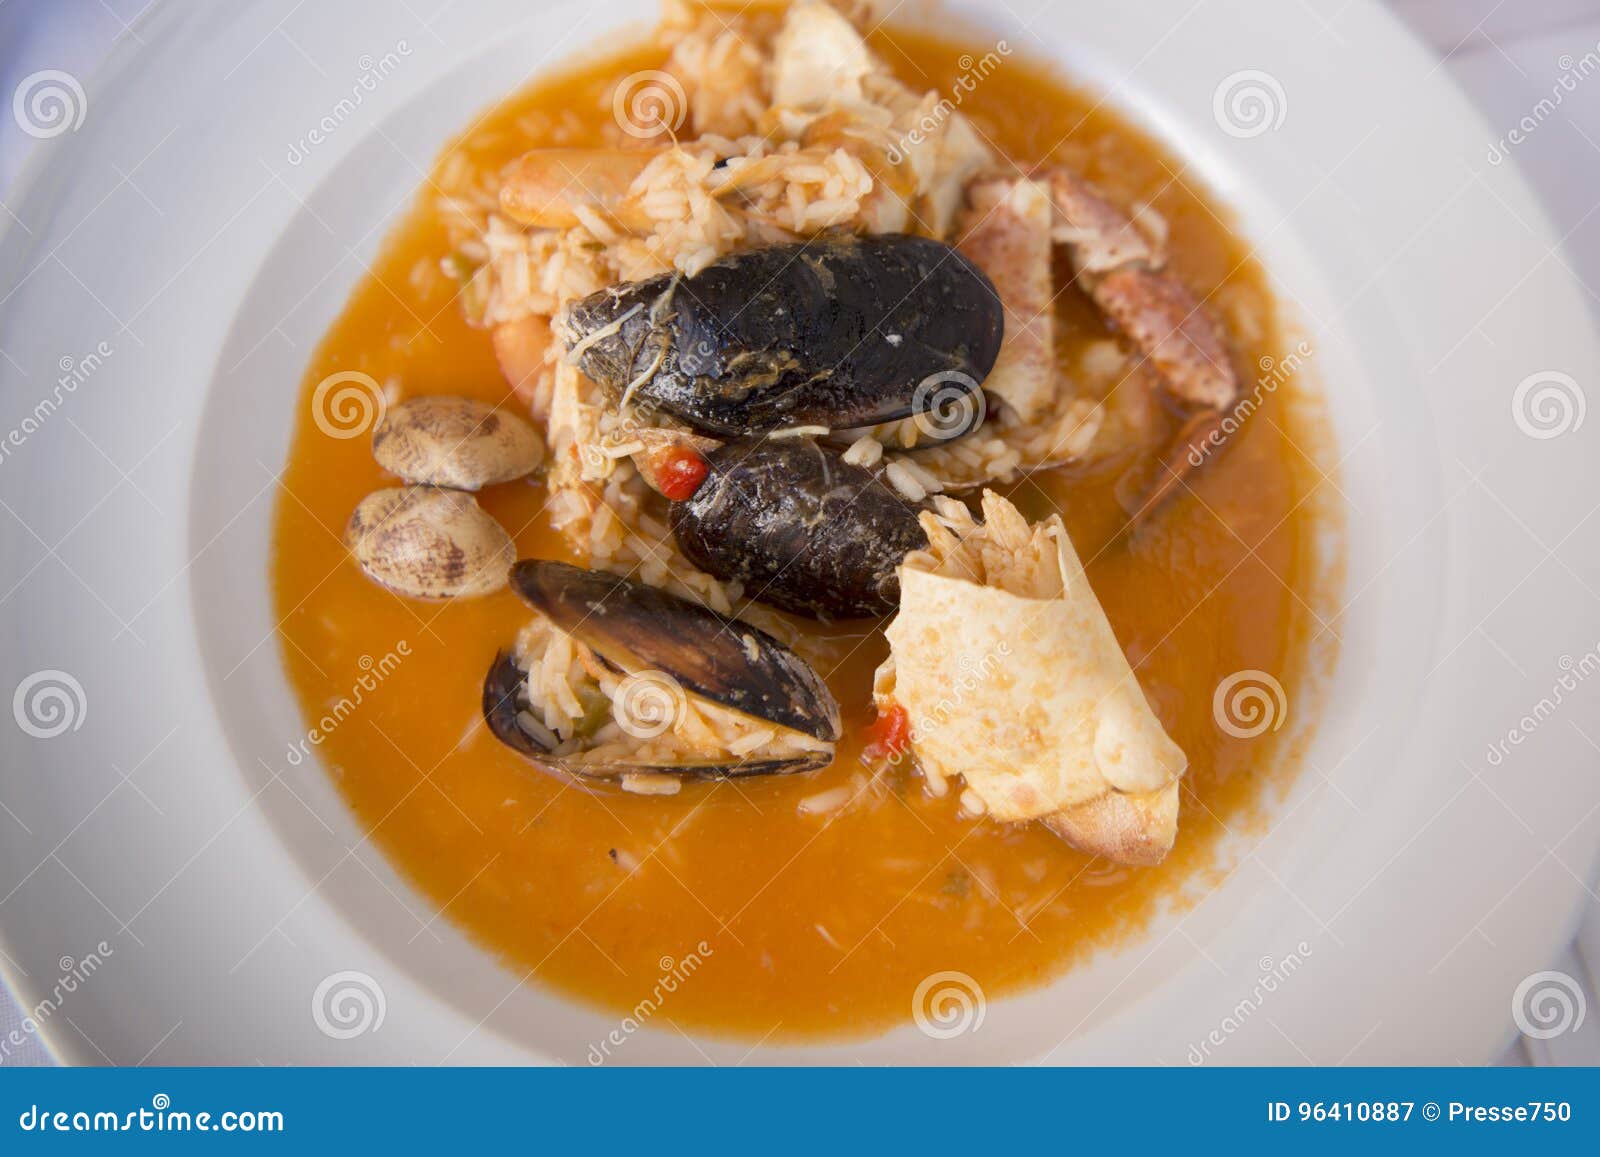 portugal algarve food arroz de marisco